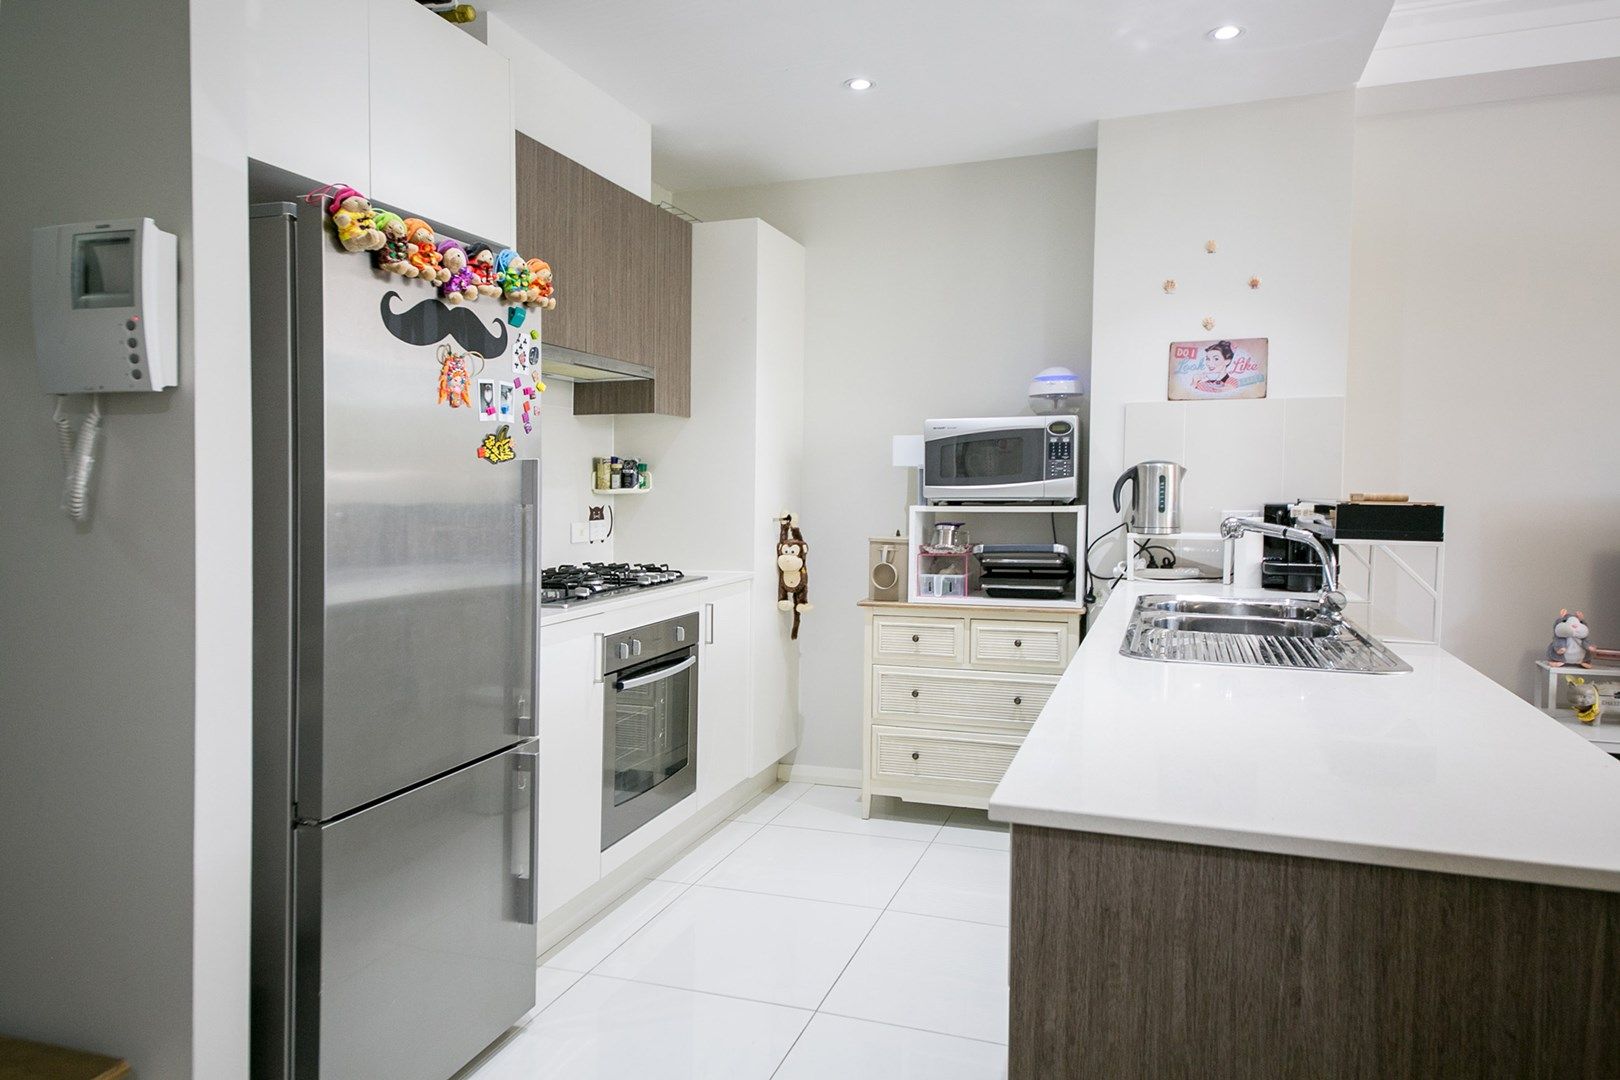 2 bedrooms Apartment / Unit / Flat in 2/34-36 Herbert Street WEST RYDE NSW, 2114